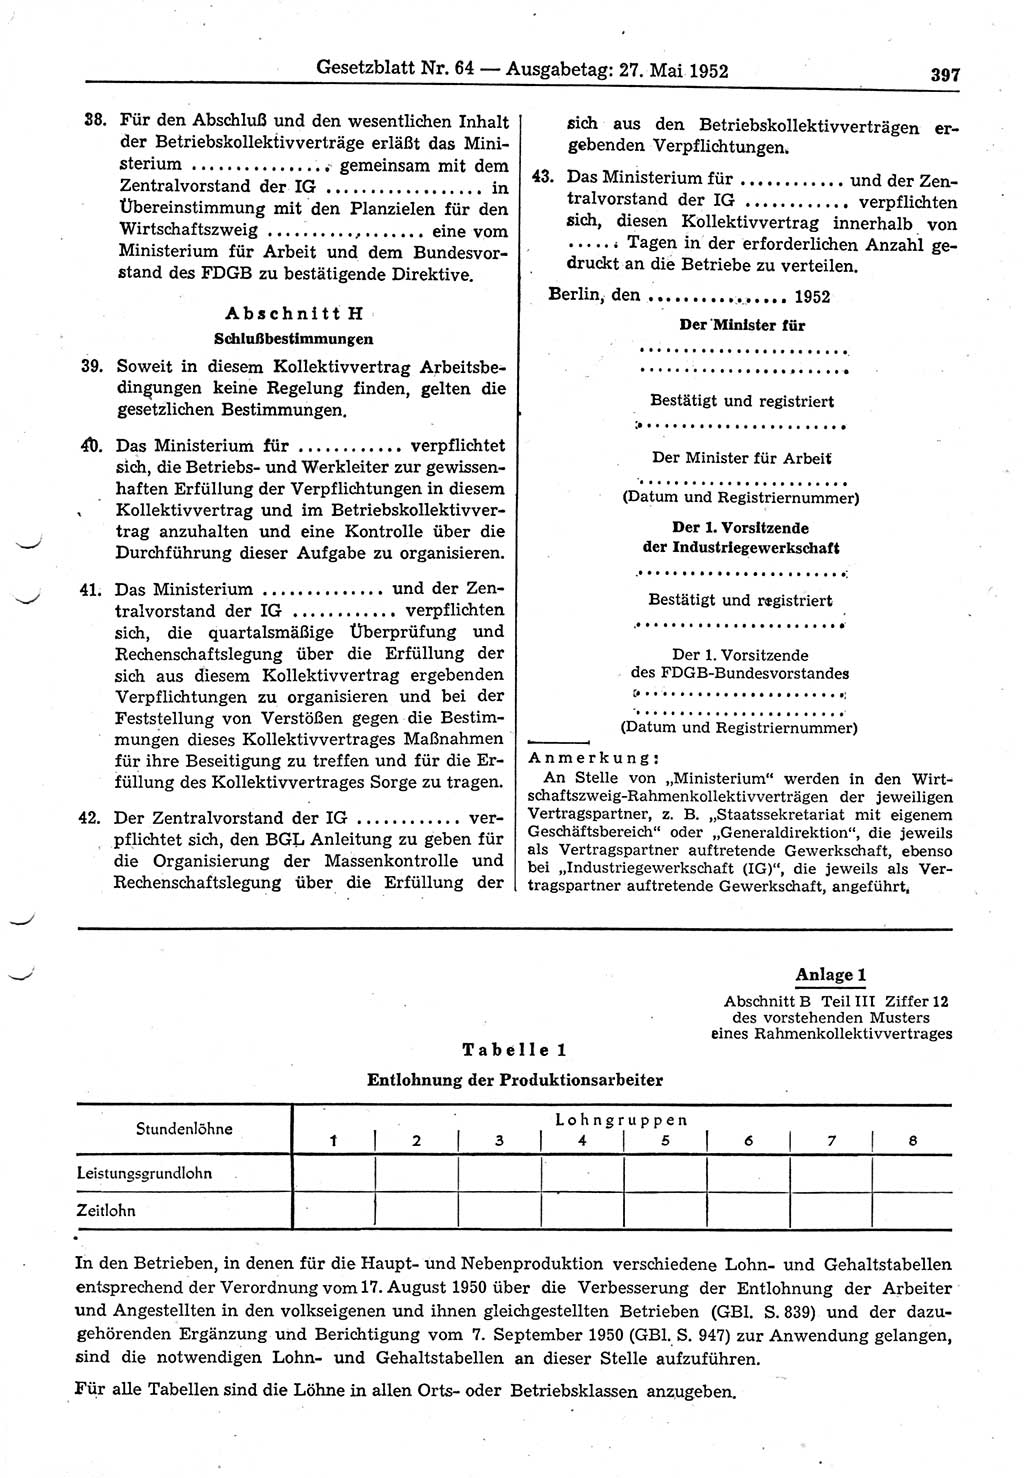 Gesetzblatt (GBl.) der Deutschen Demokratischen Republik (DDR) 1952, Seite 397 (GBl. DDR 1952, S. 397)